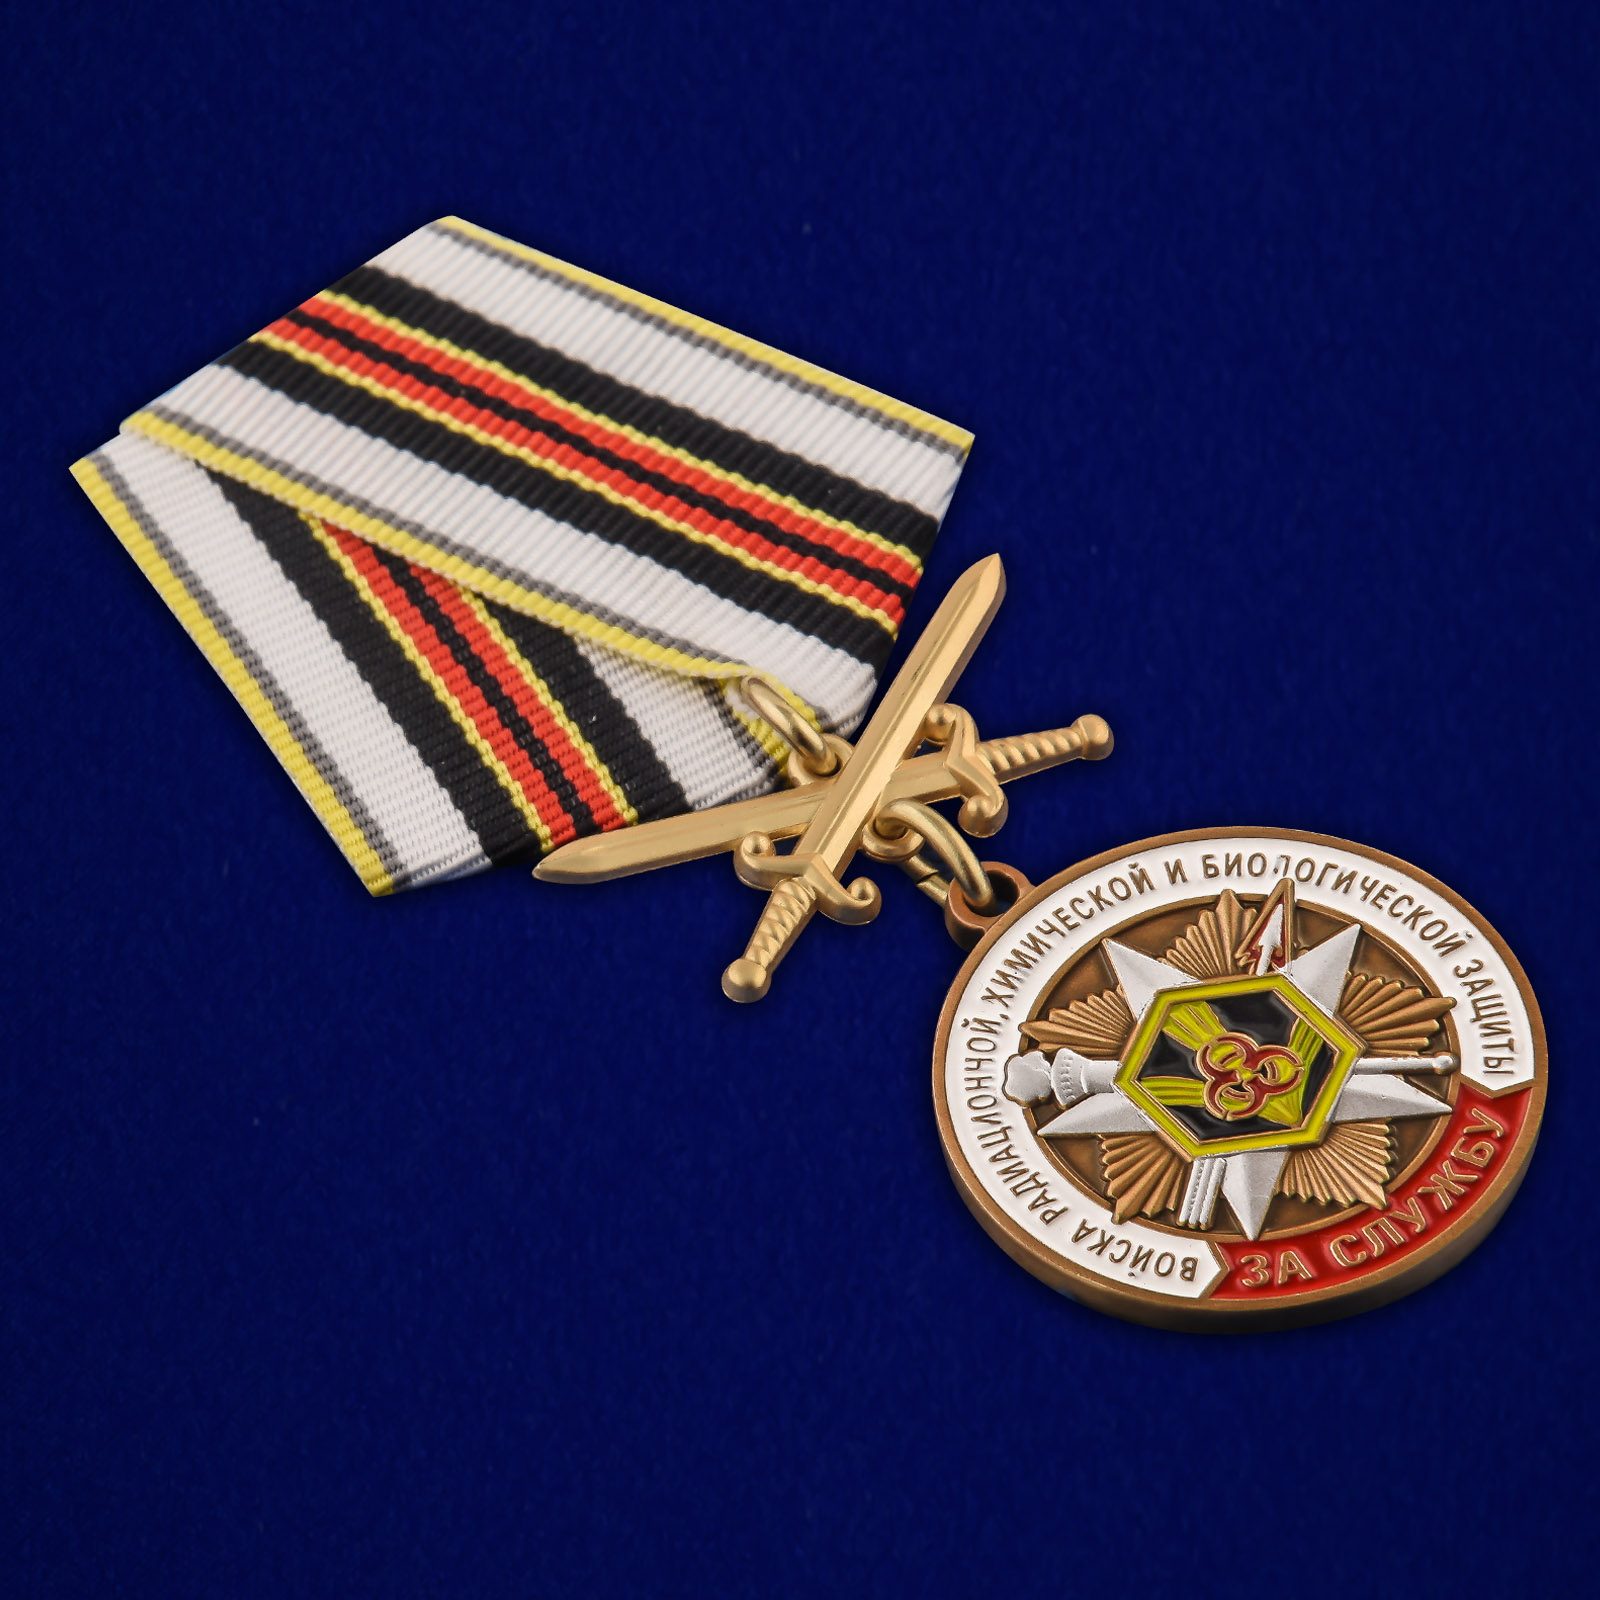 Купить памятную медаль "За службу в войсках РХБЗ" 